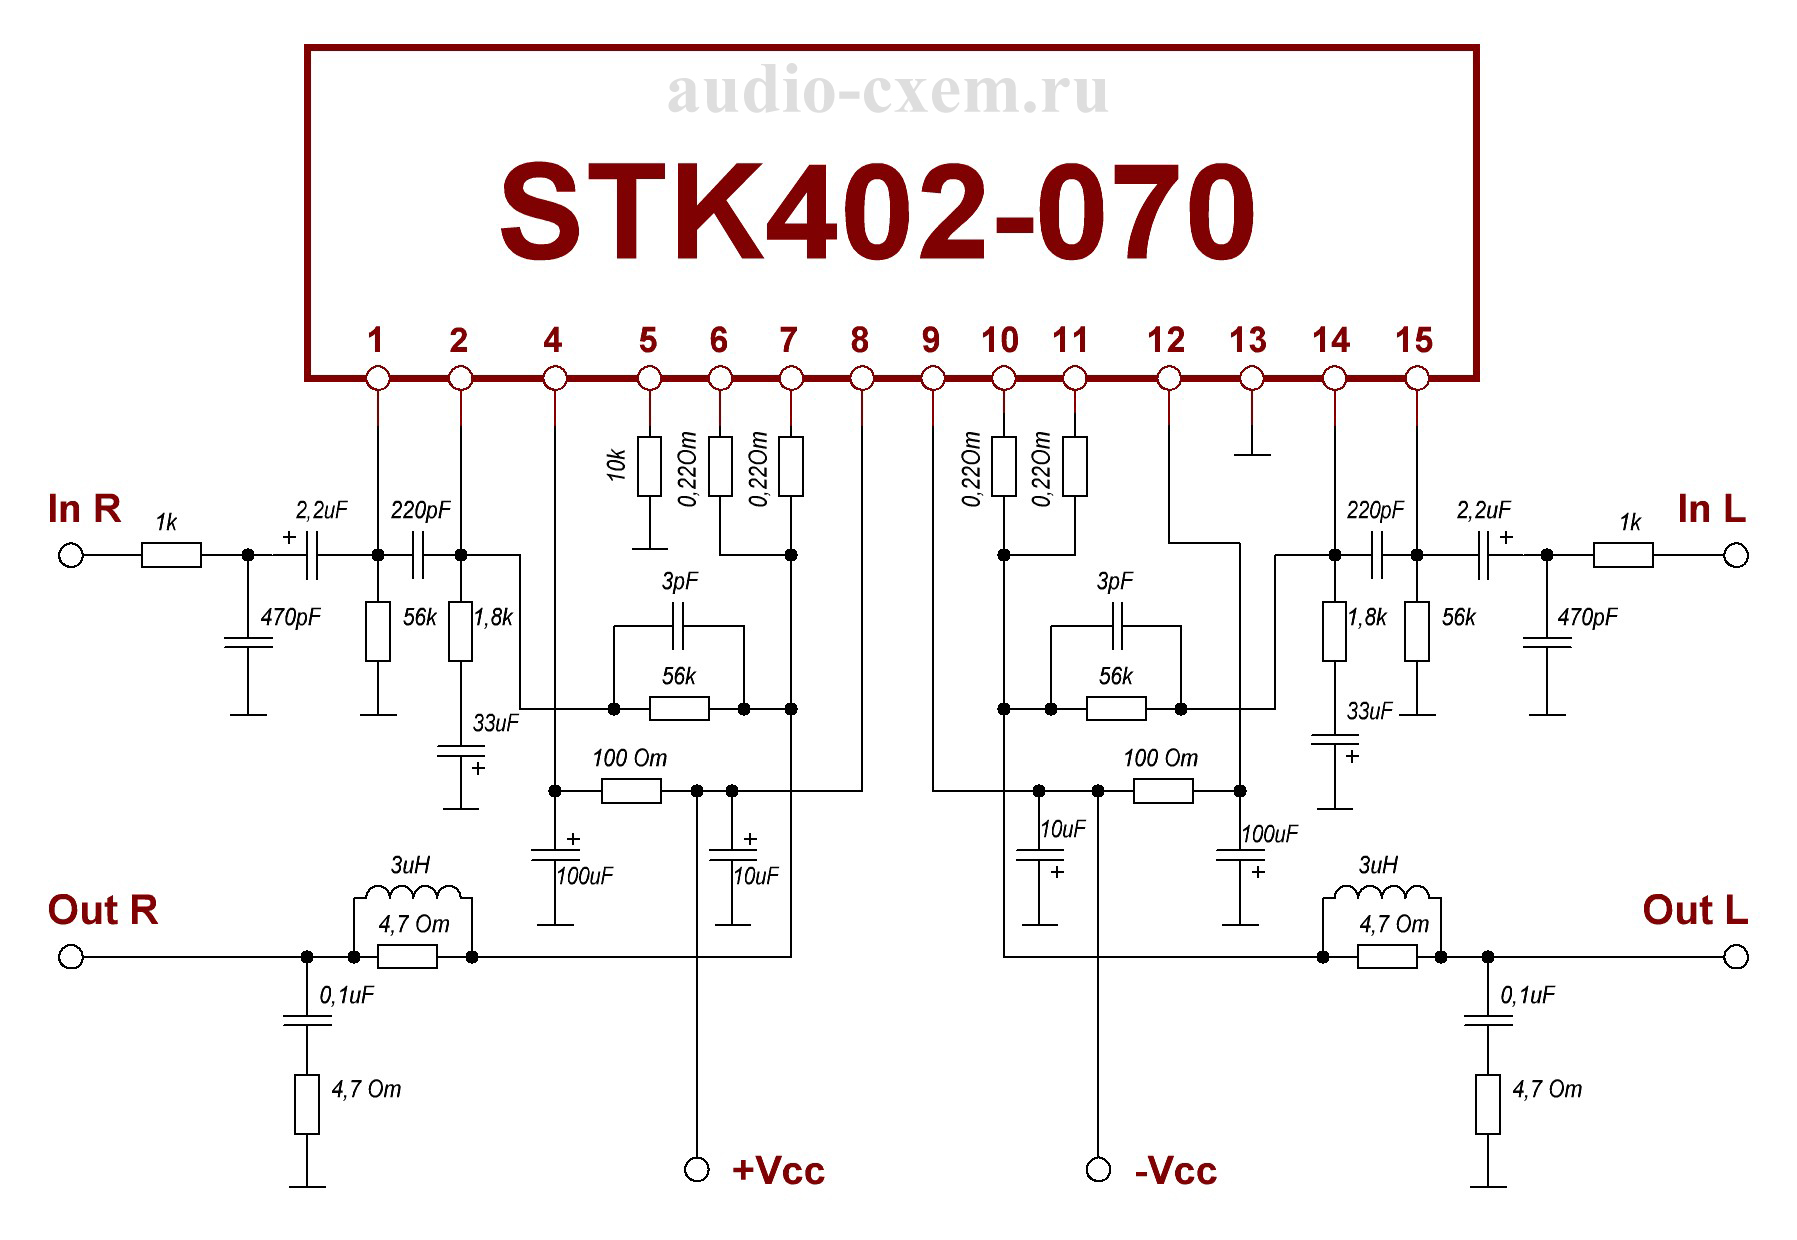 STK402-070 Схема